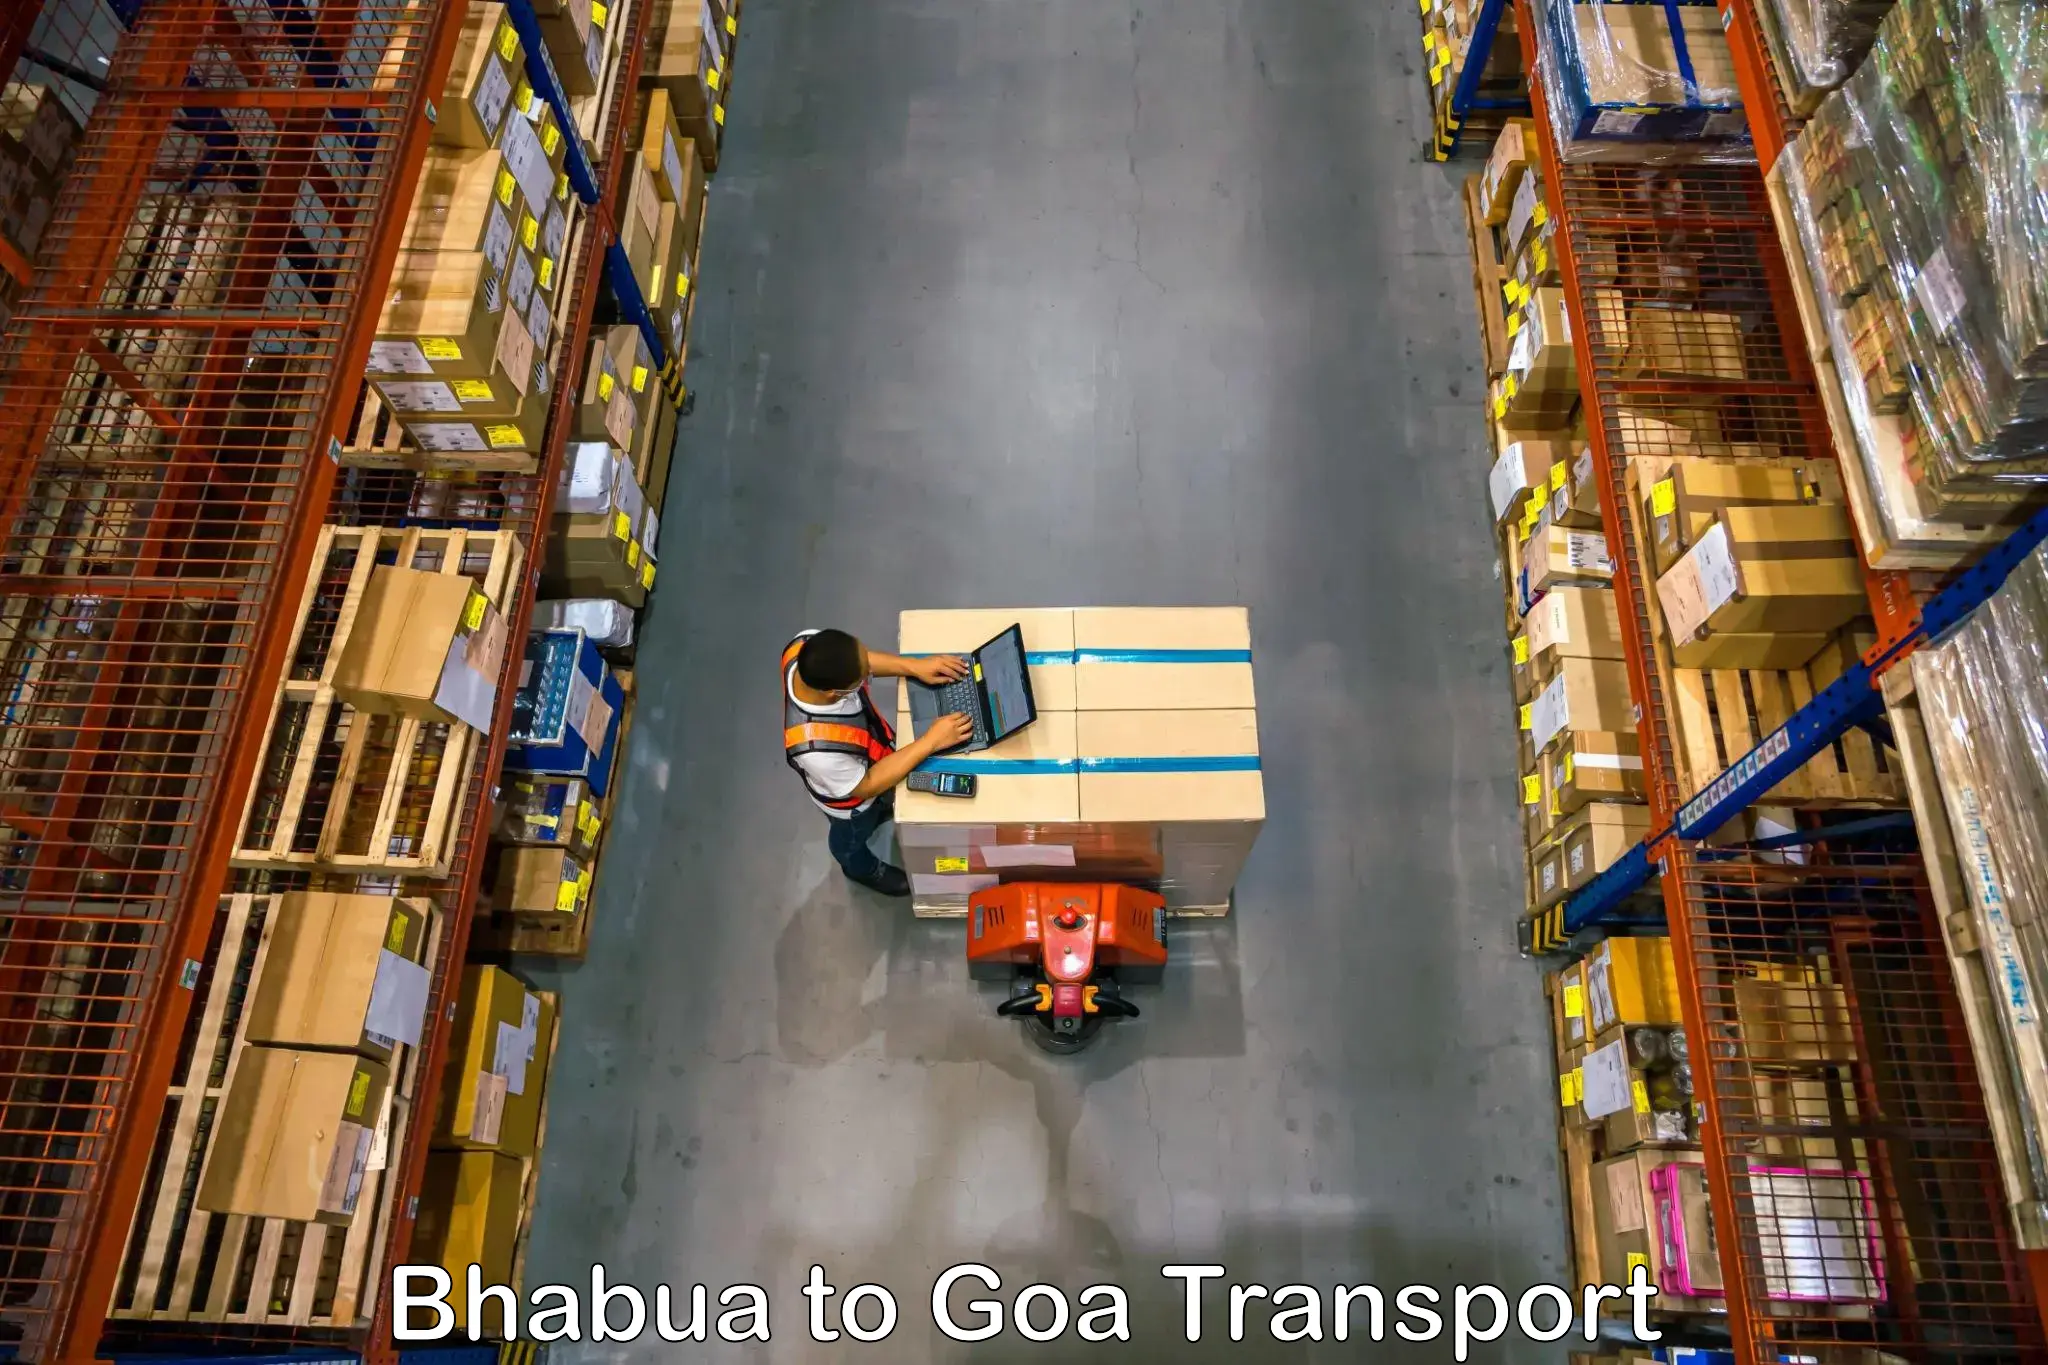 Nearest transport service Bhabua to Panaji